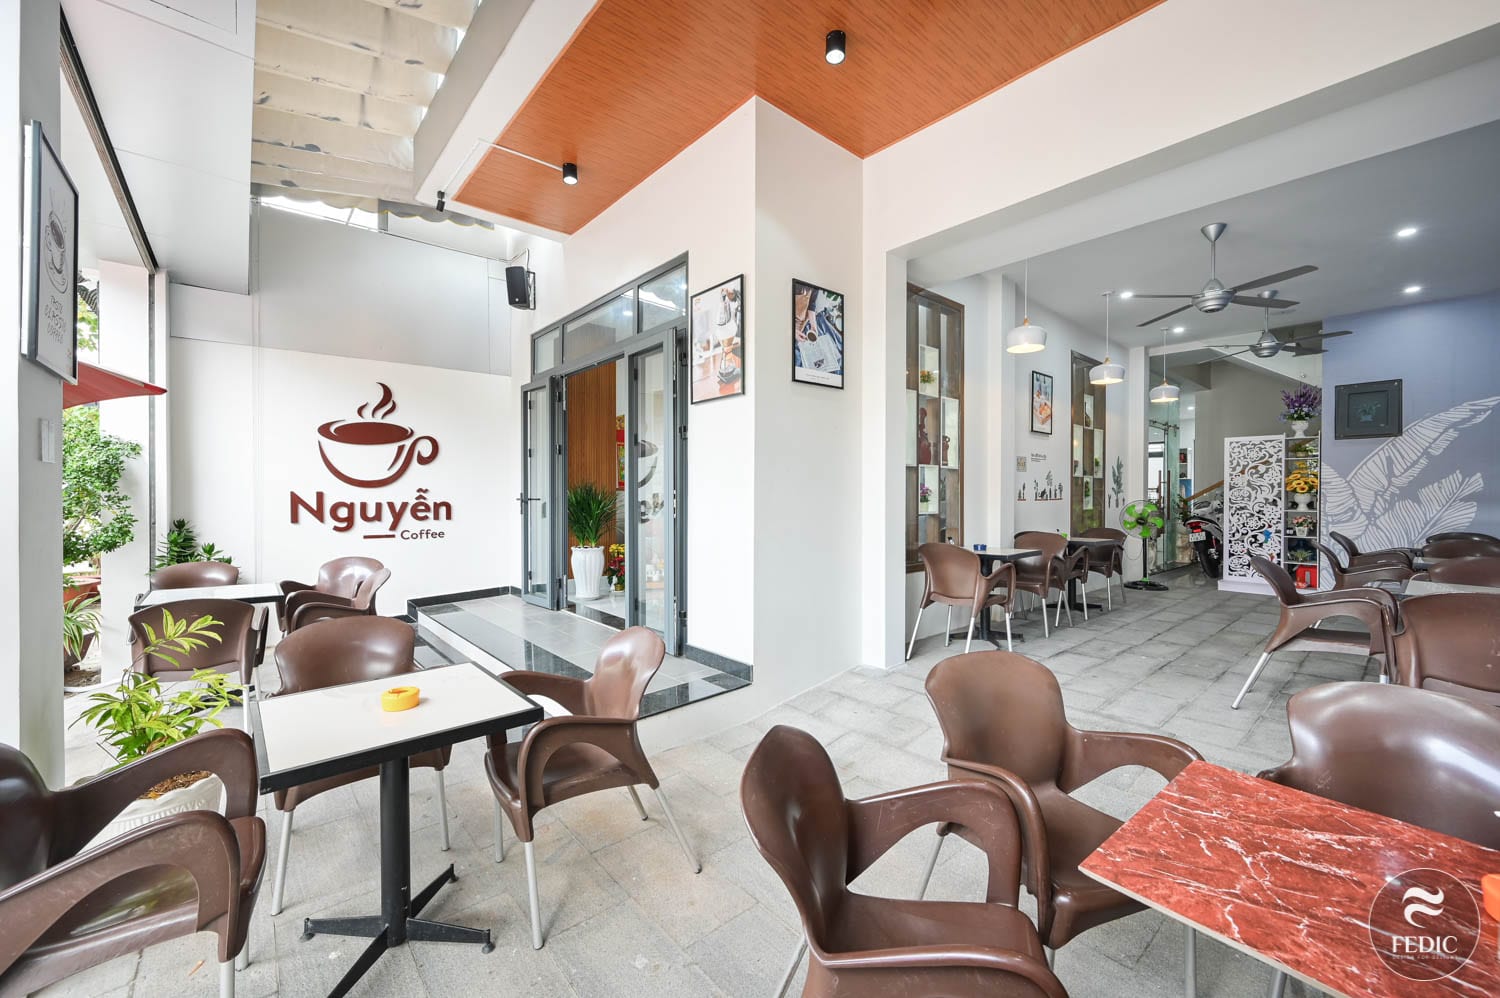 Noi that Nguyen Coffee-Fedic